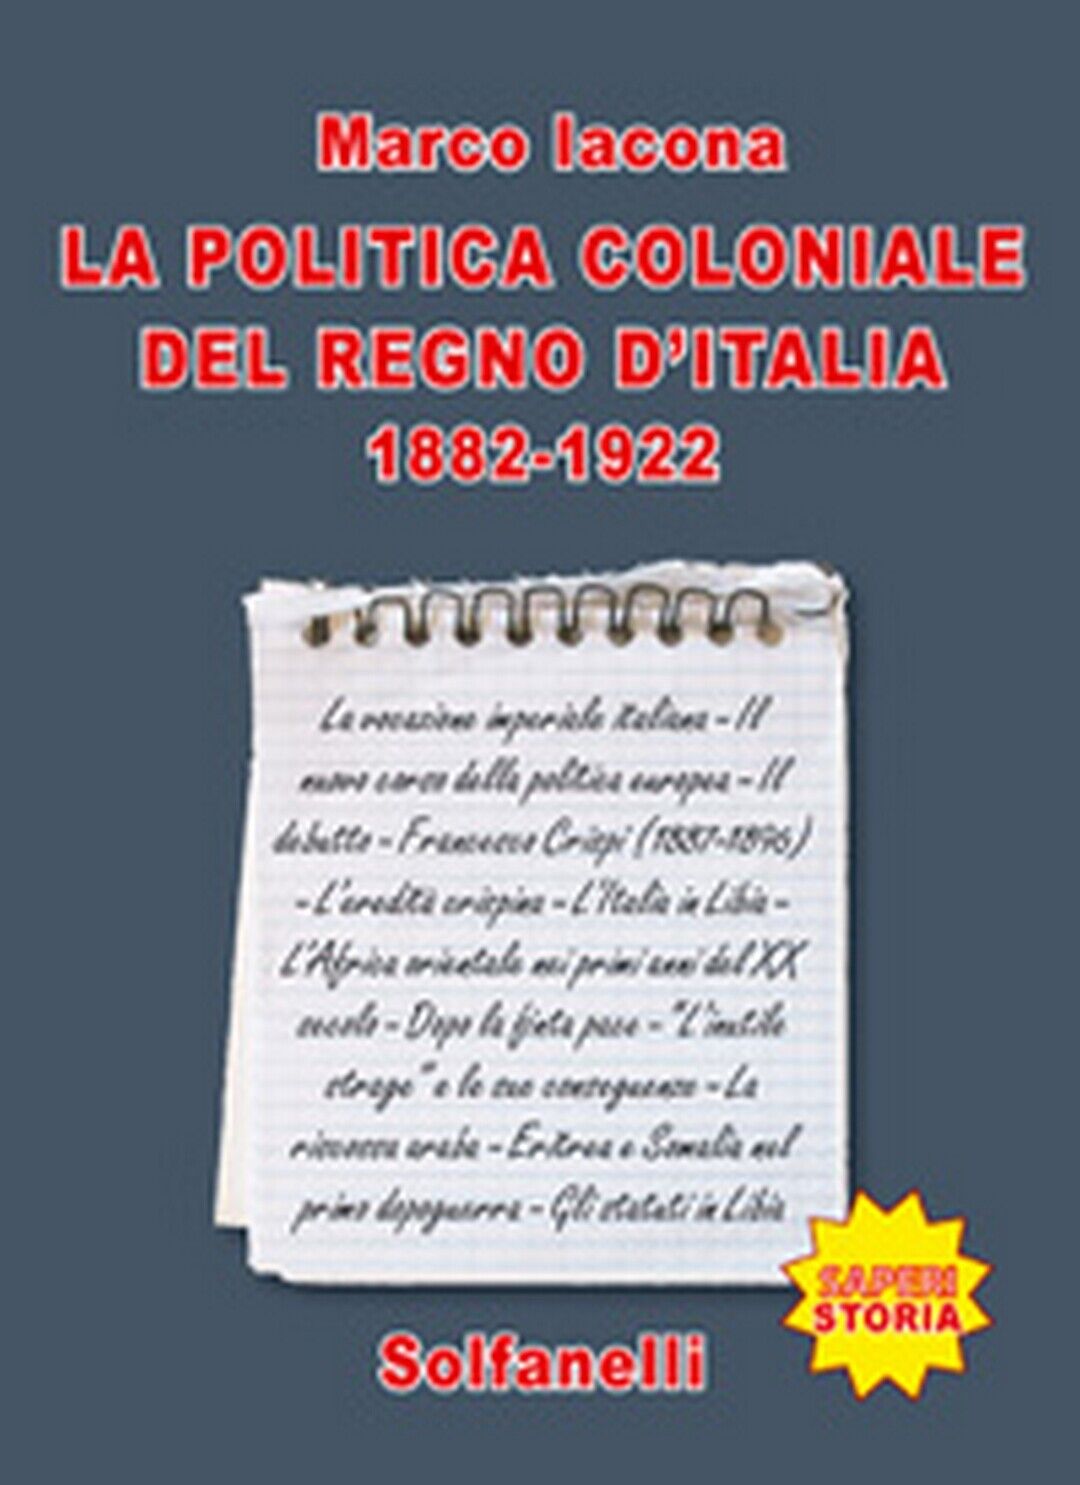 La politica coloniale del Regno d'Italia (1882-1922), Marco Iacona, Solfanelli 